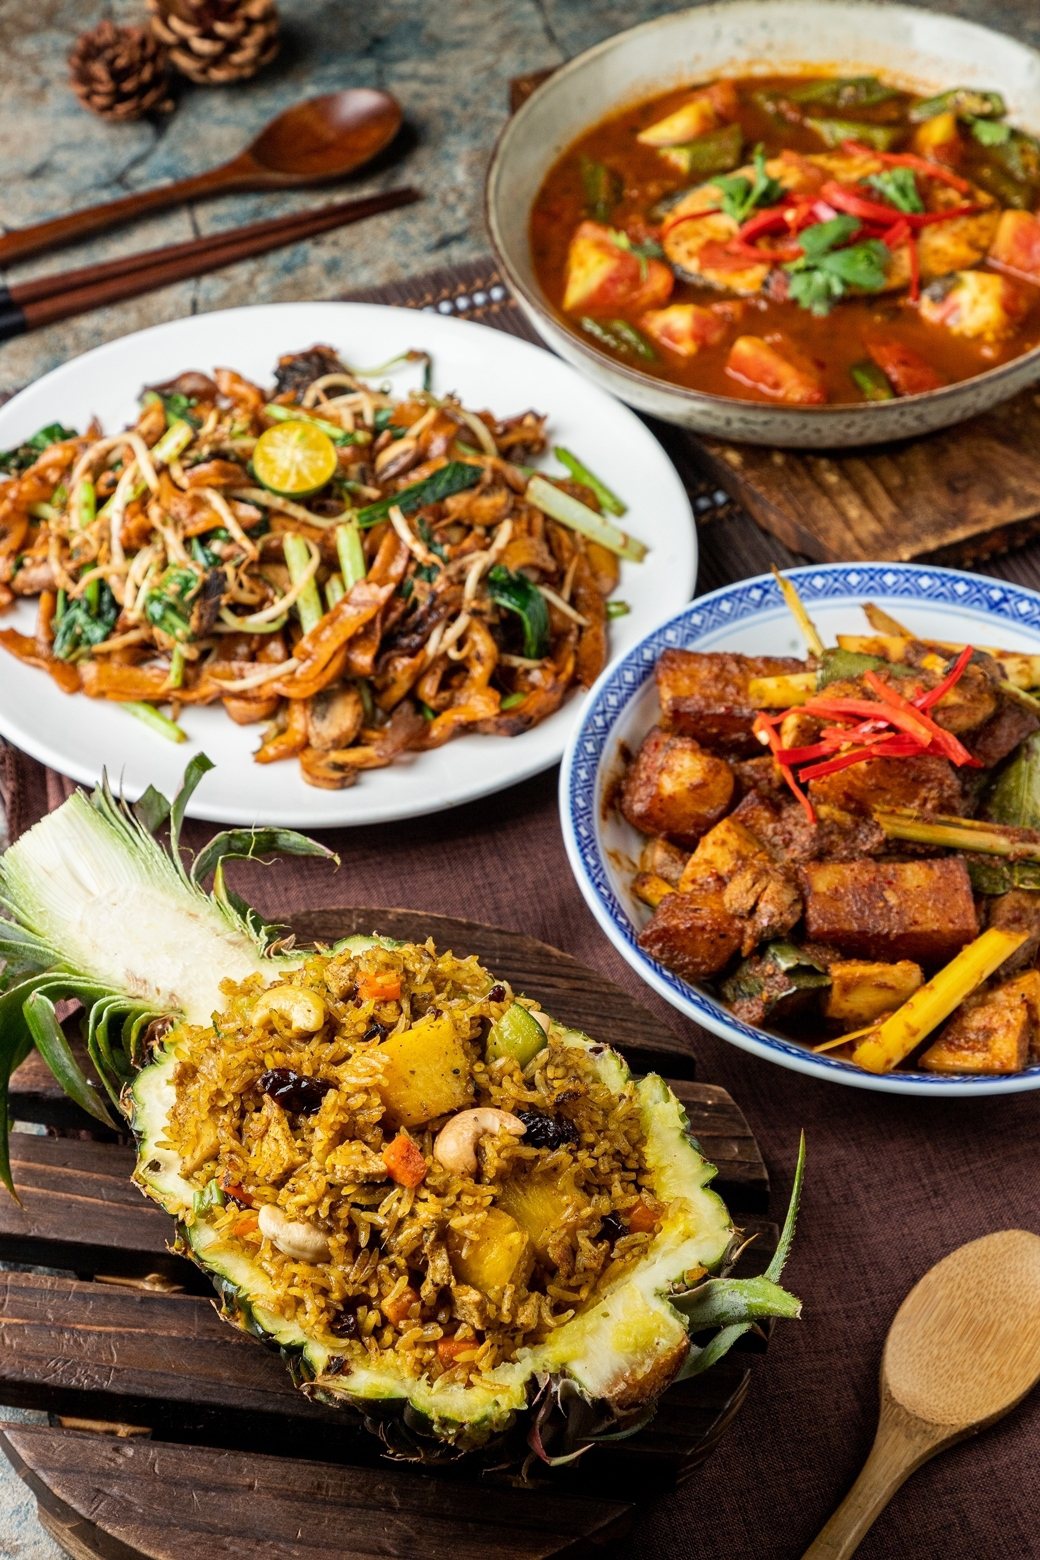 無肉也歡 馬來西亞素食寶林茶室 內用外帶皆優惠 – 經濟日報